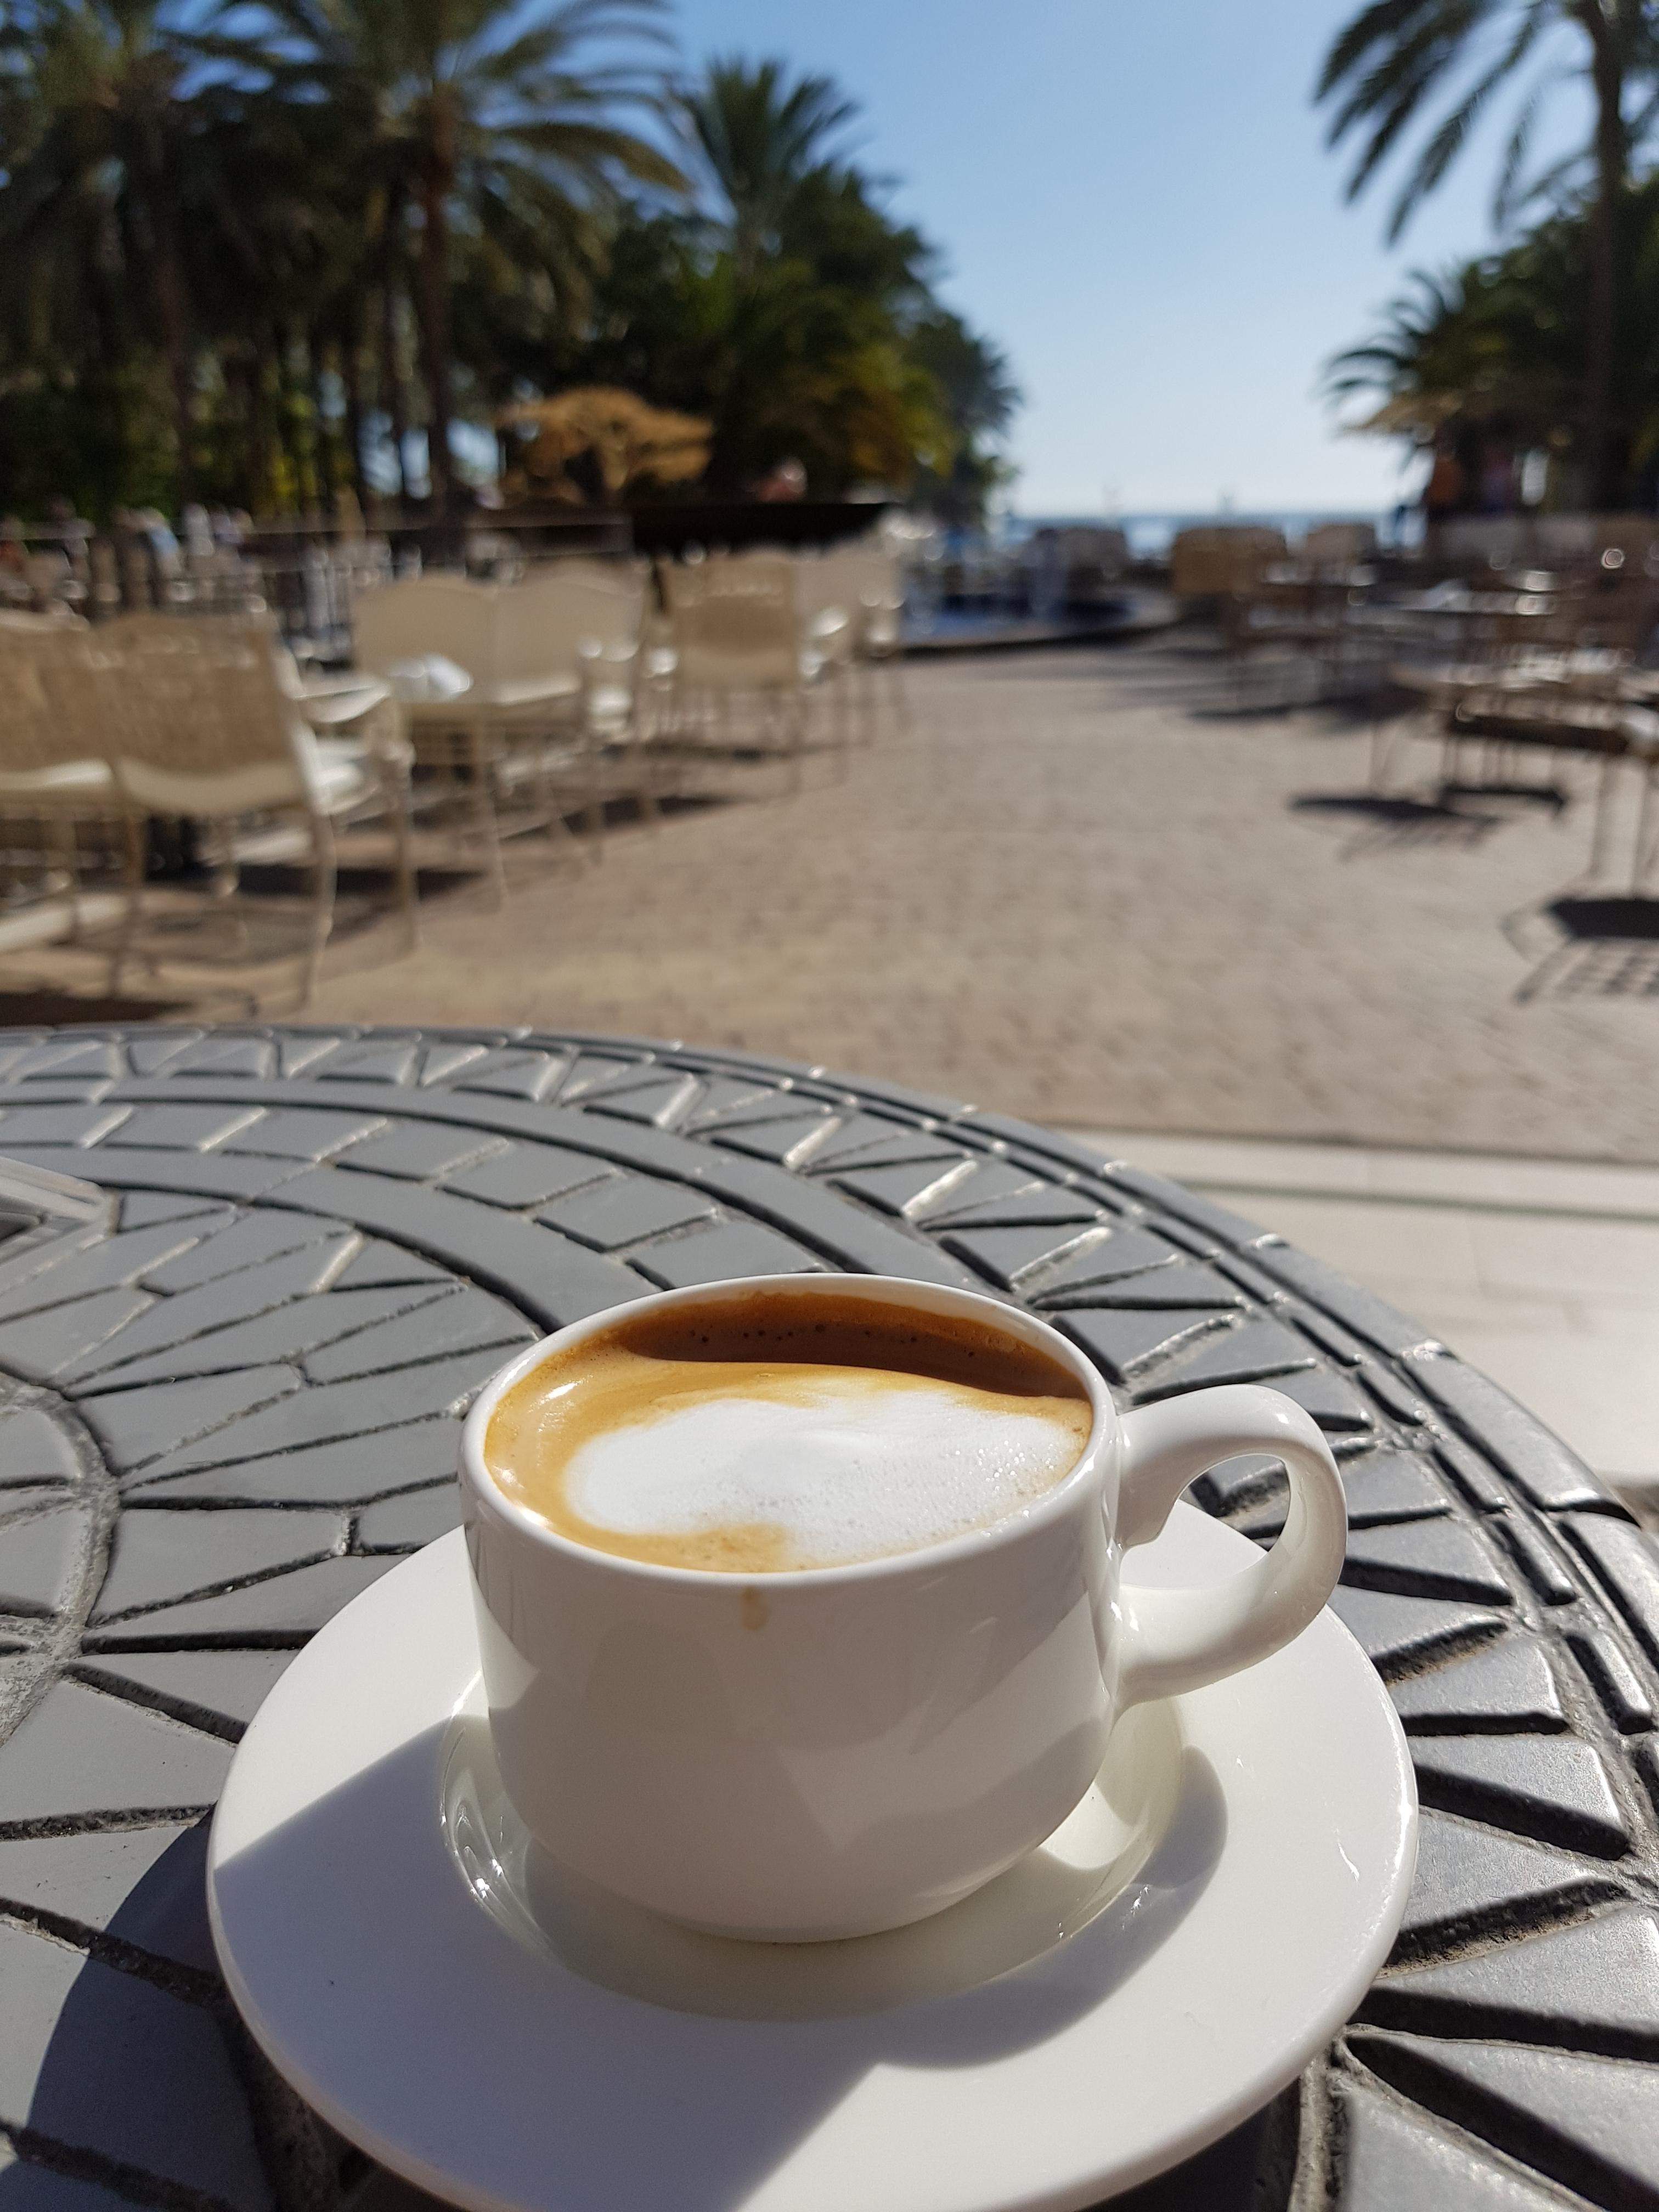 Der Neujahrsvorsatz mehr #Relaxing wird aktiv umgesetzt .... #Meer #Cortado #Espresso mit Milch 